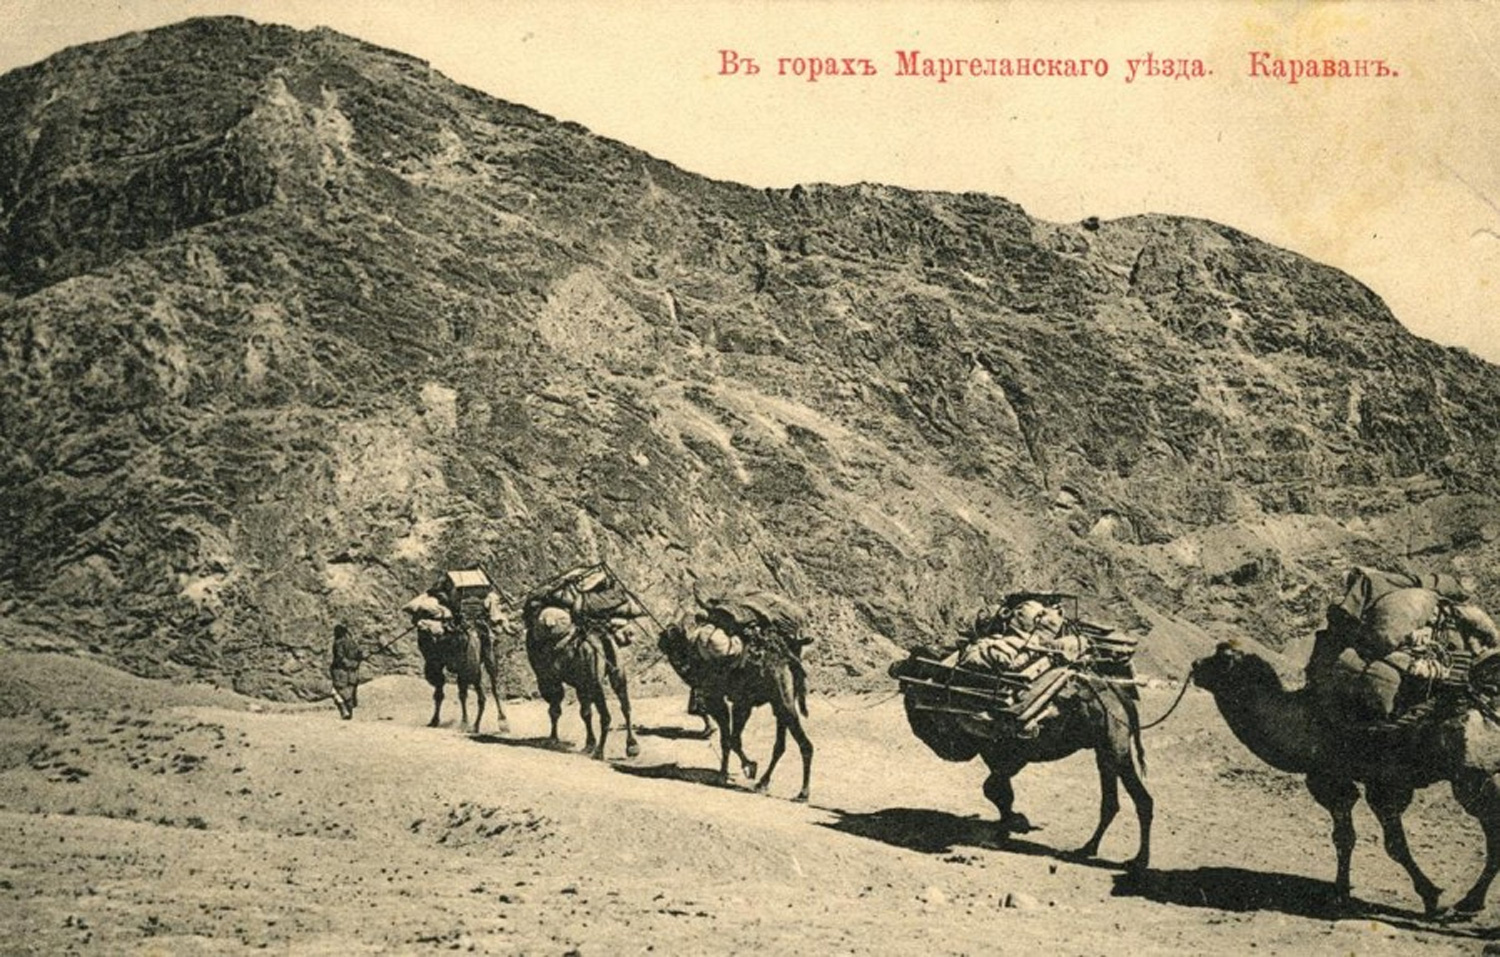 Гора караванов